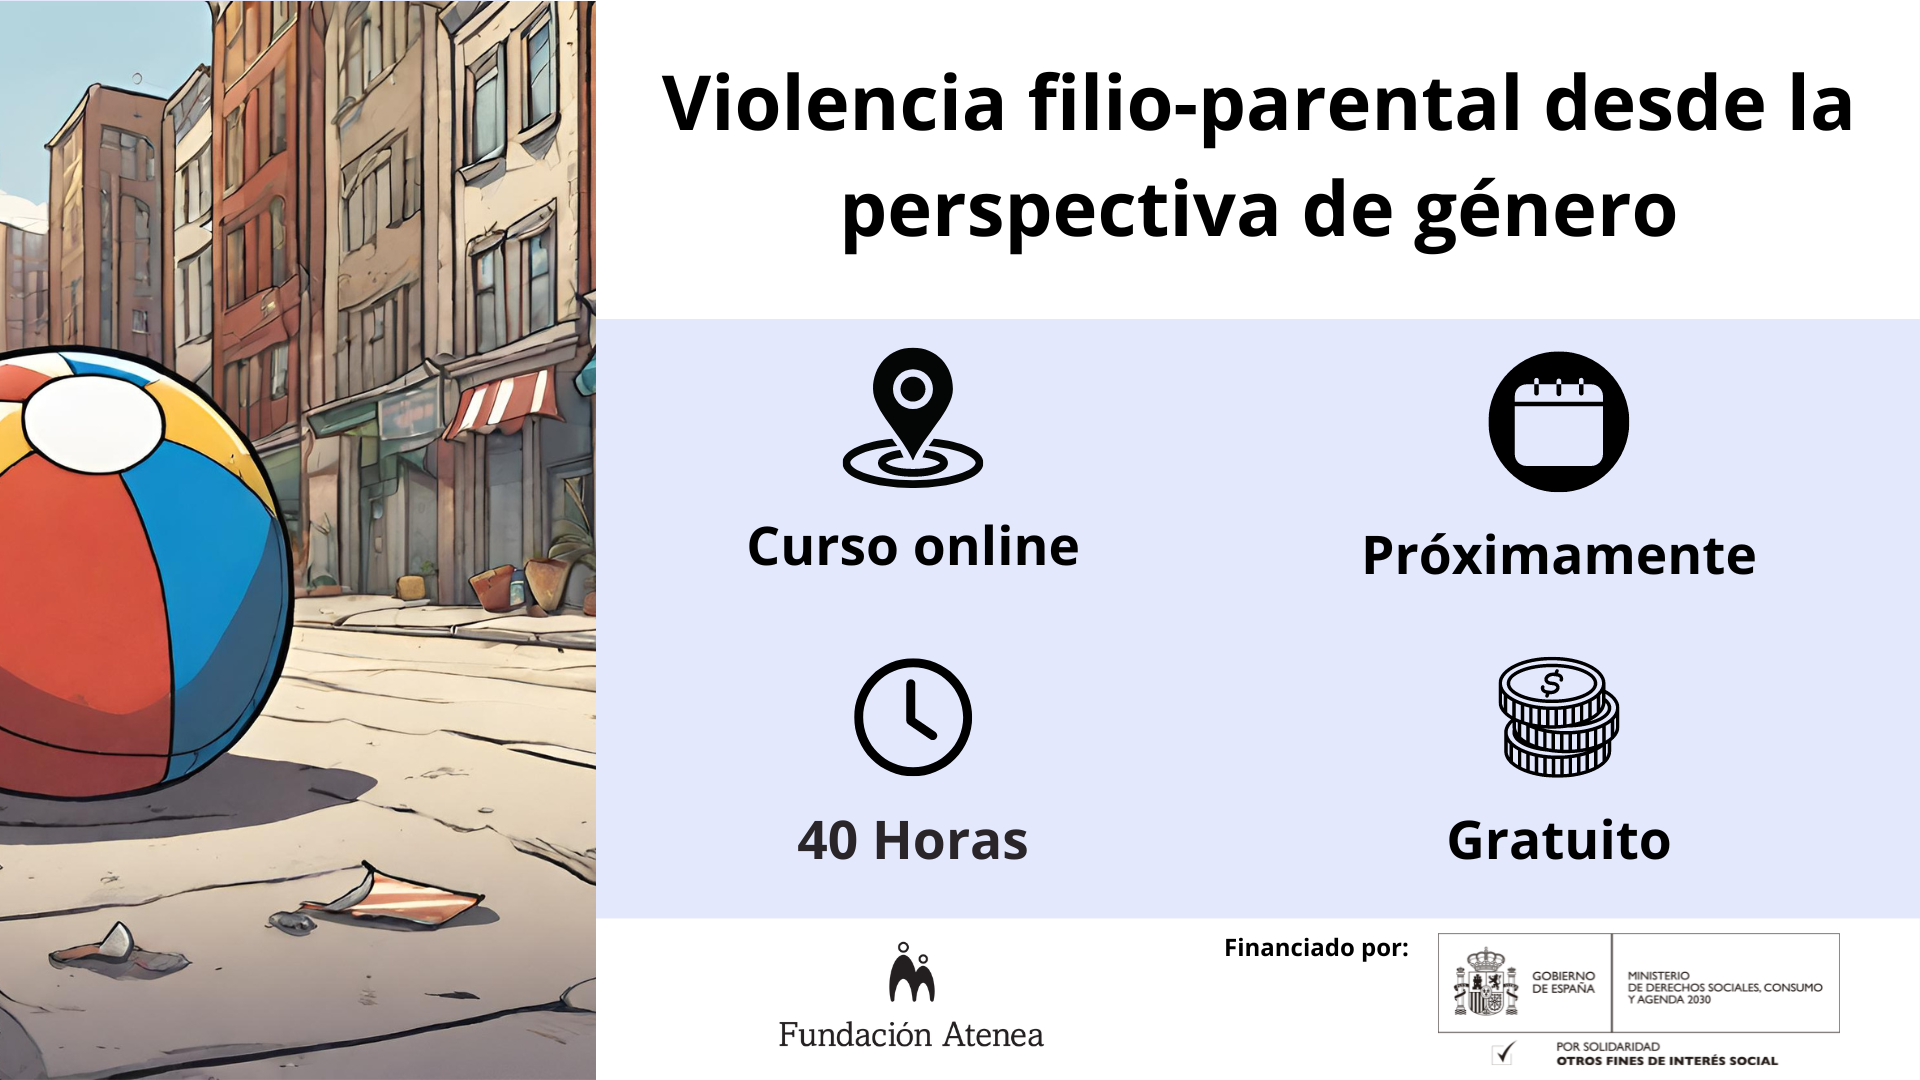 Intervención en violencia filio-parental desde la perspectiva de género. Curso Online gratuito realizado próximamente (40 horas)